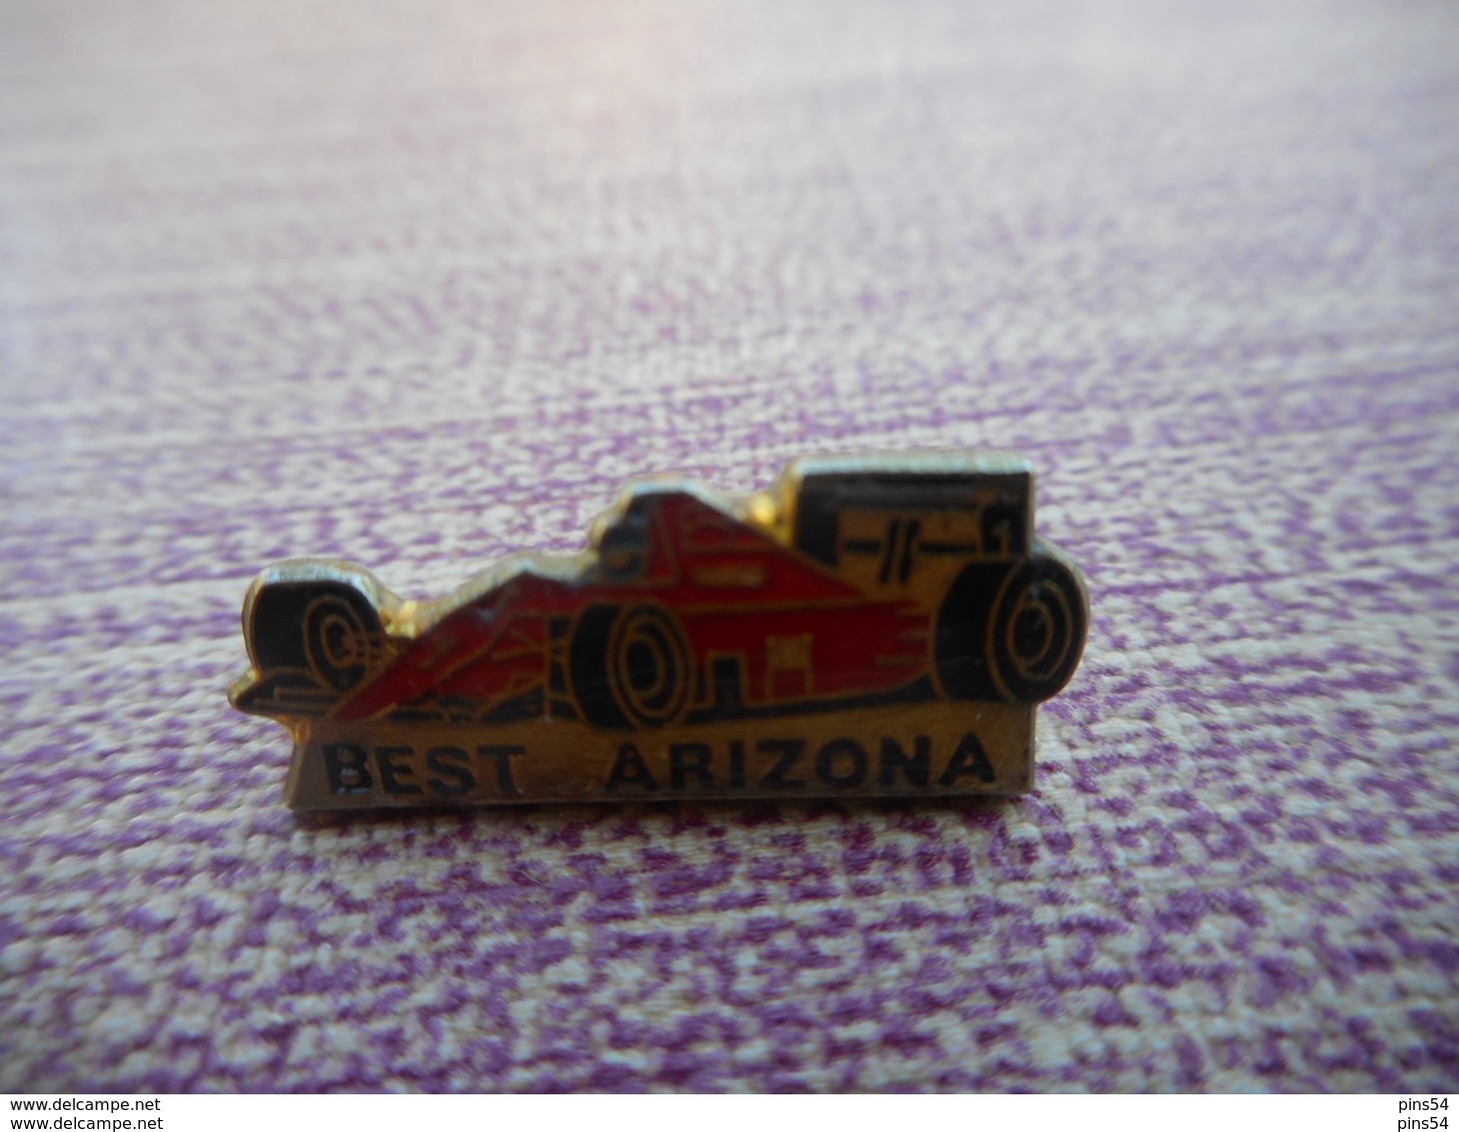 A011 -- Pin's Best Arizona - F1